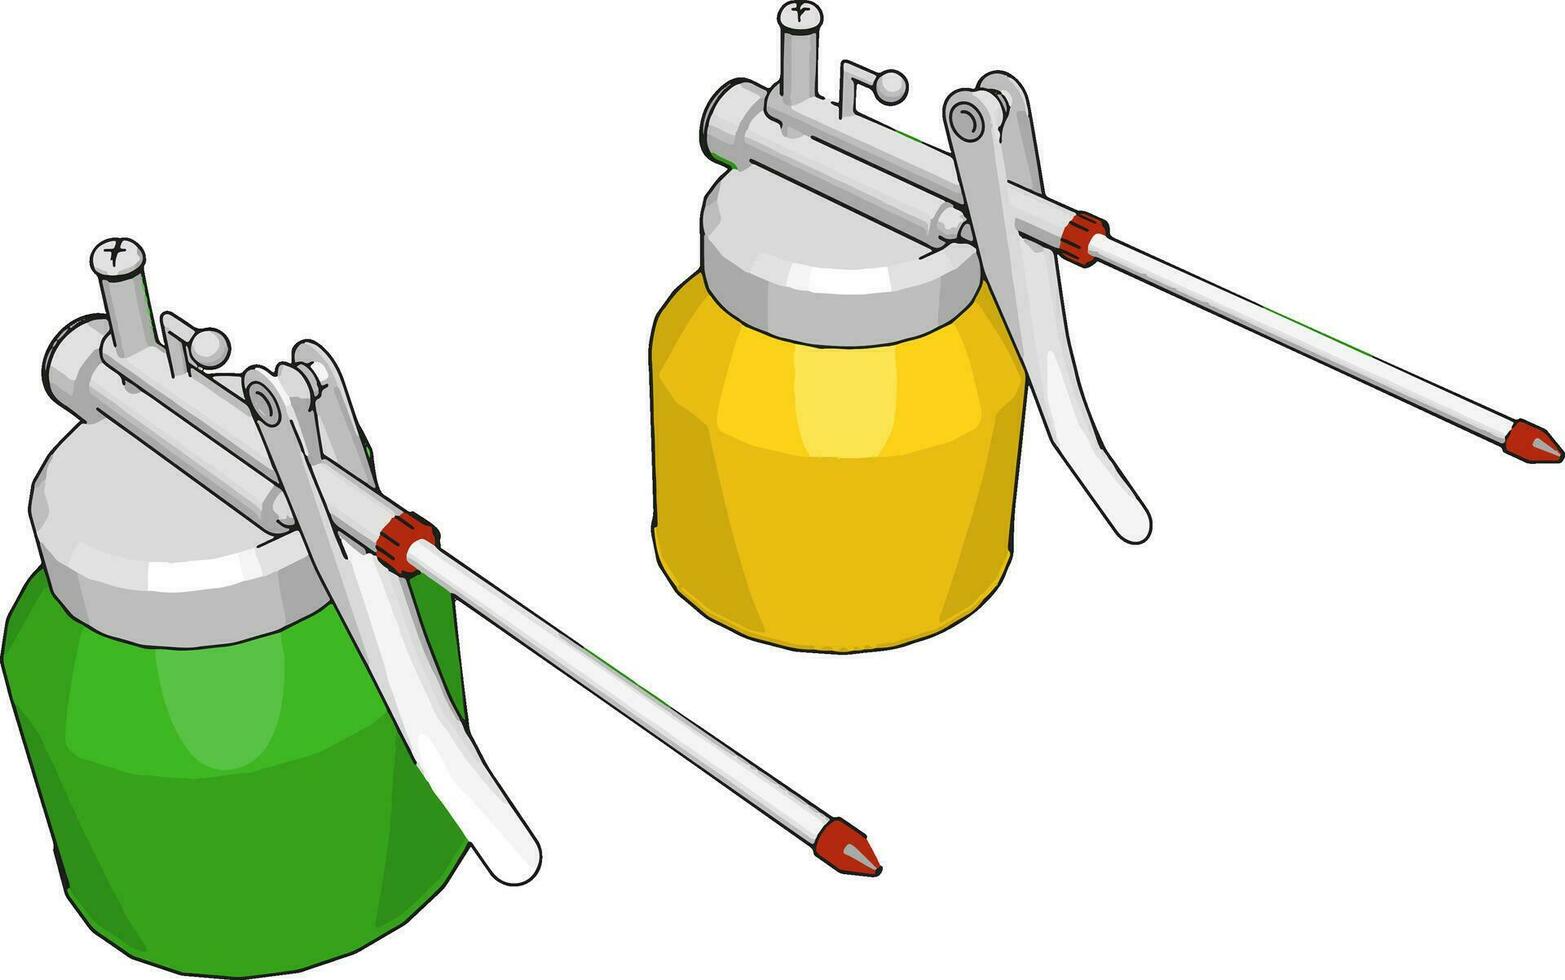 Máquina de soldadura verde y amarillo, ilustración, vector sobre fondo blanco.